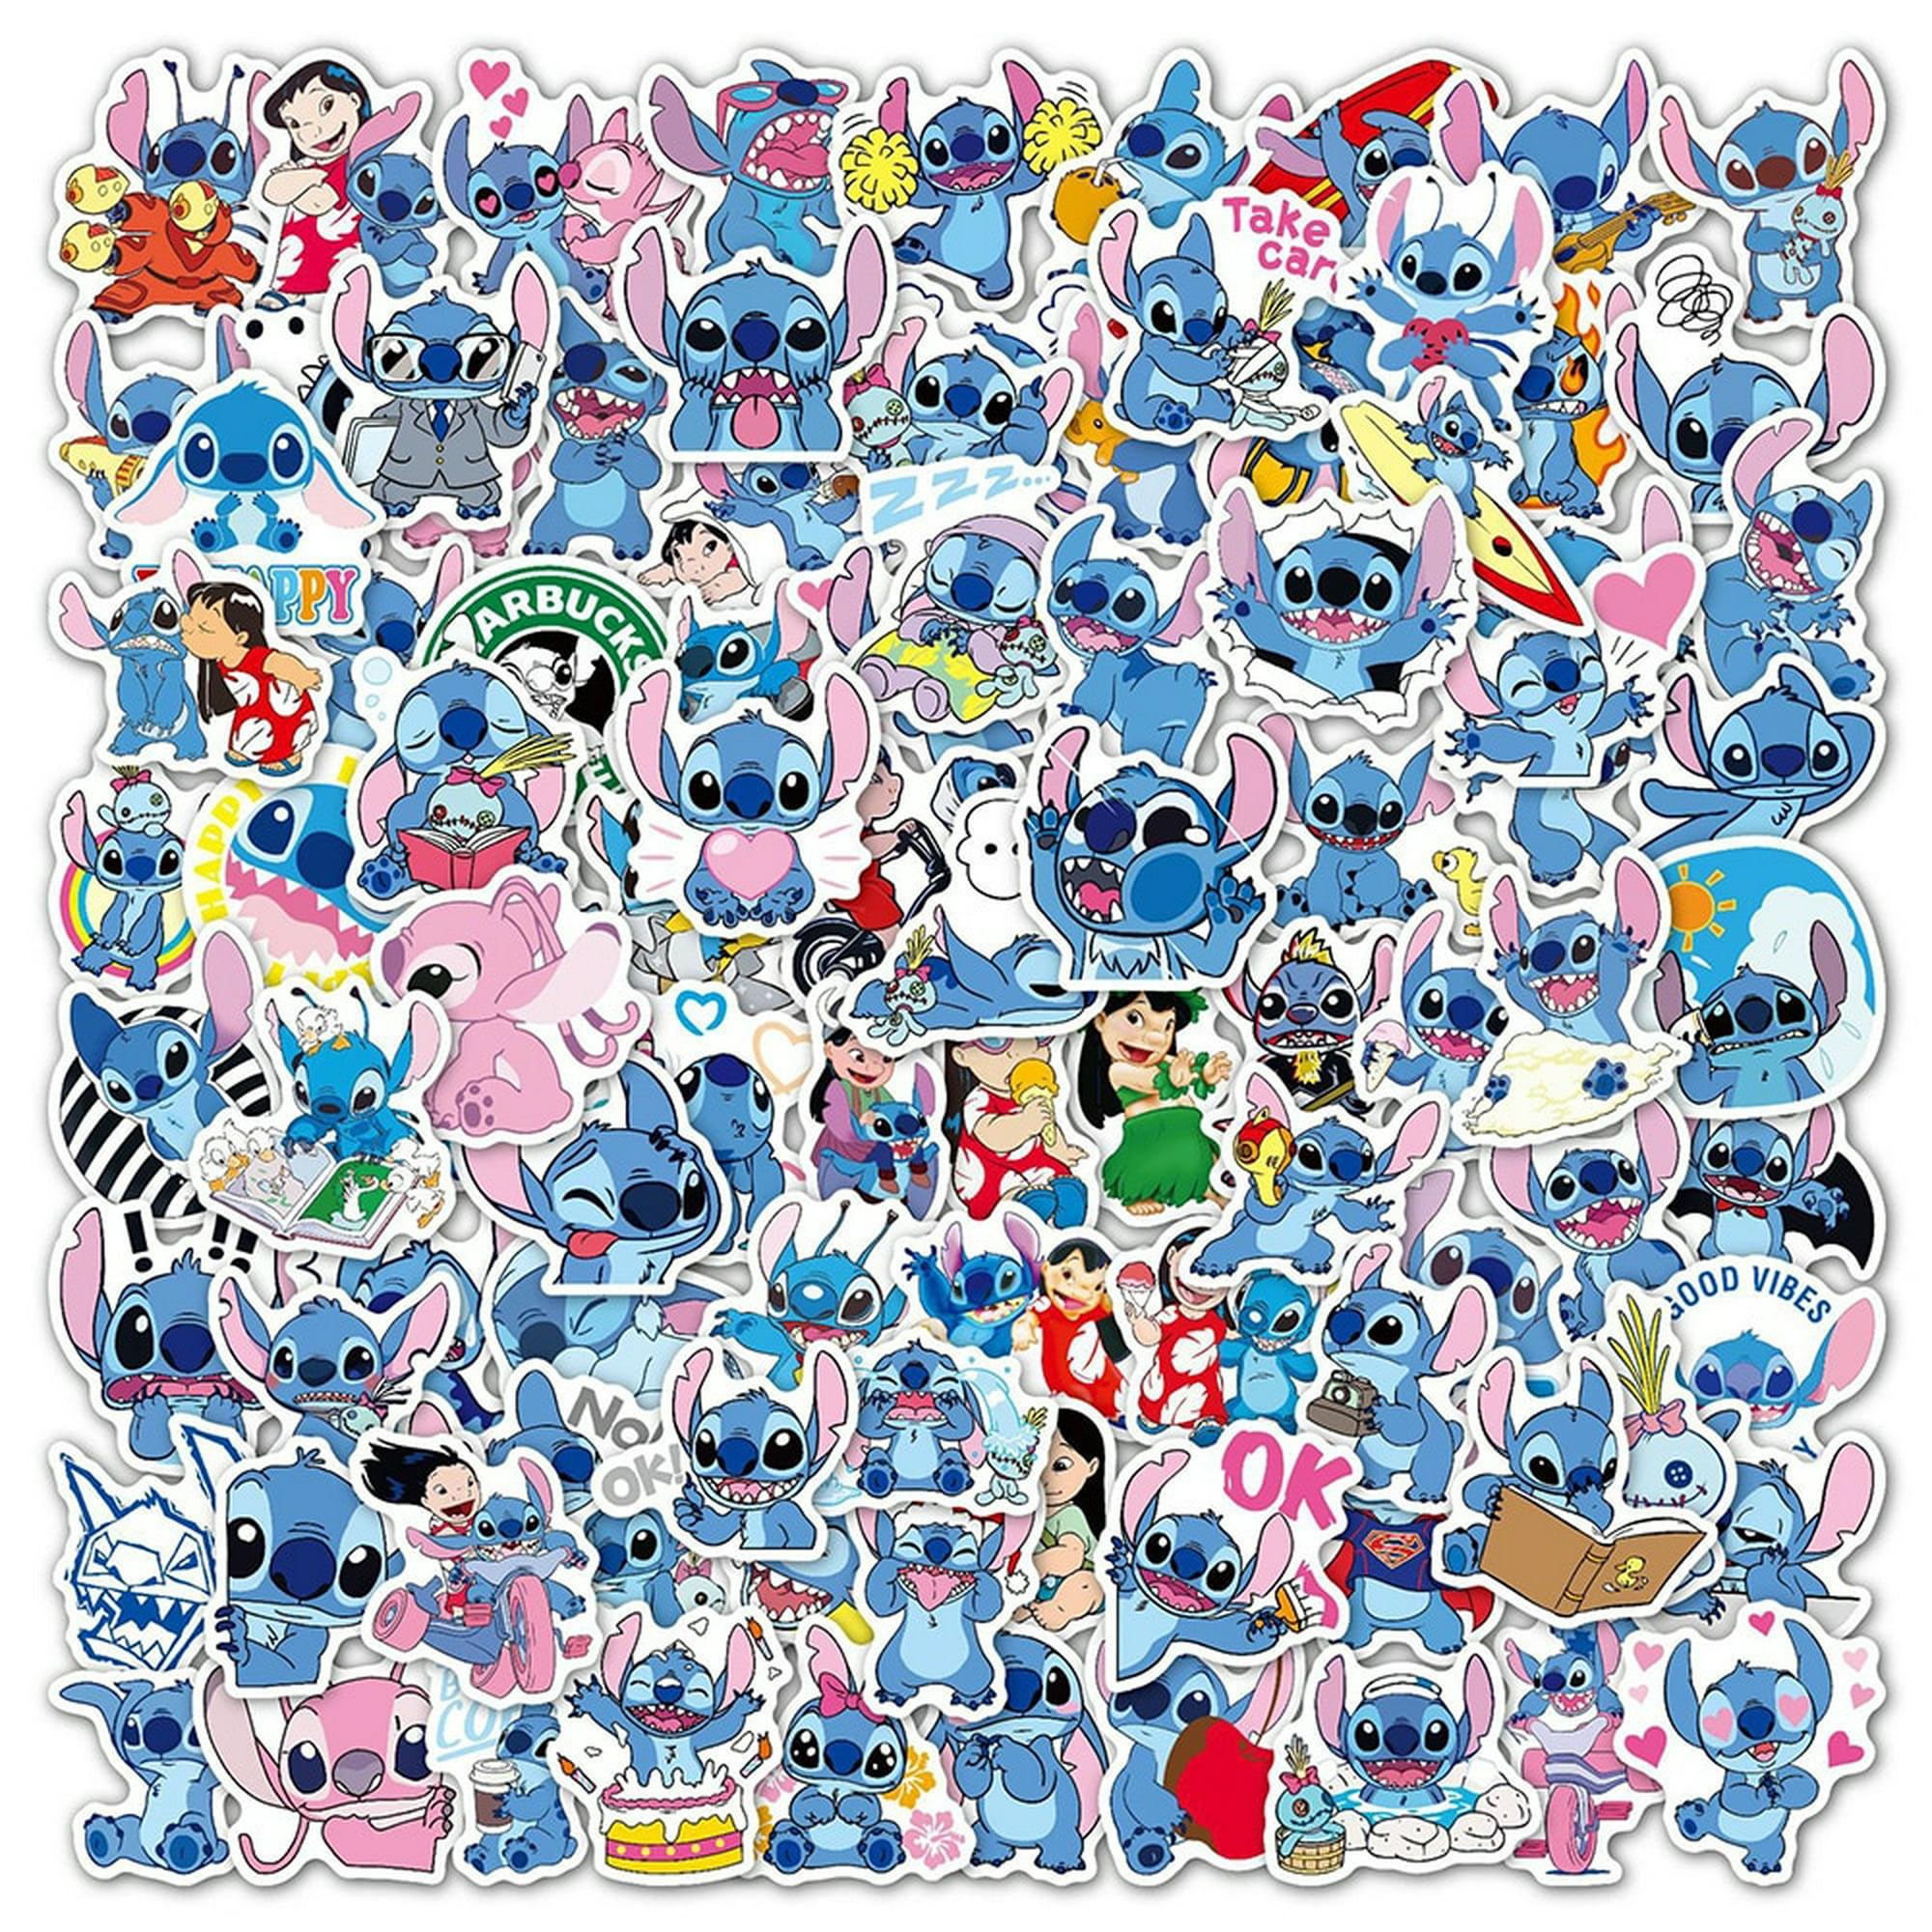 50 piezas Lilo & Stitch pegatinas de vinilo para ordenador